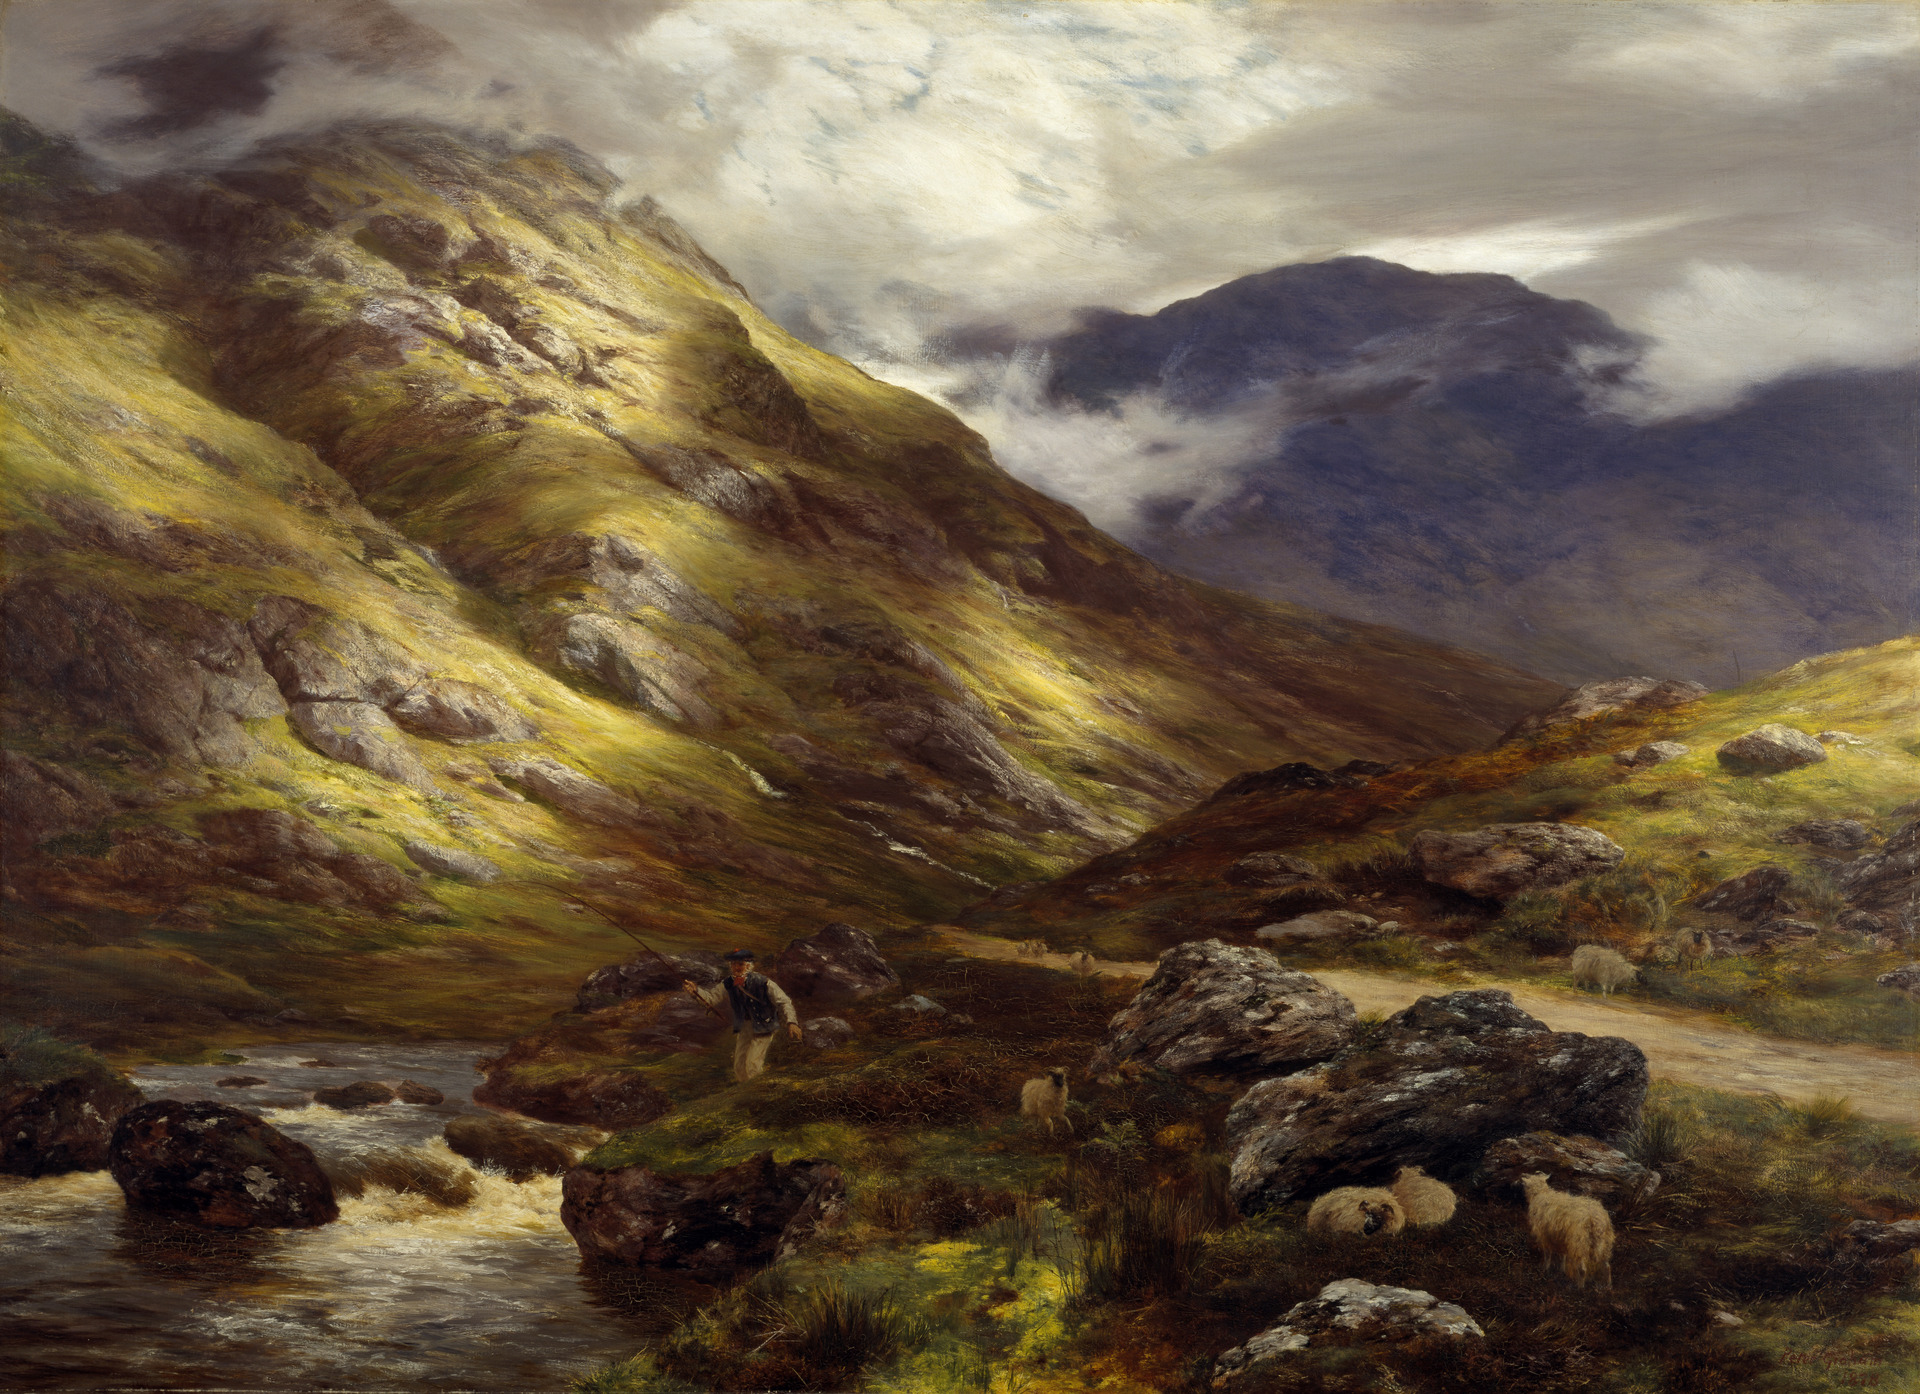 Wędrujące cienie by Peter Graham - 1878 - 134.62 x 182.88 cm 